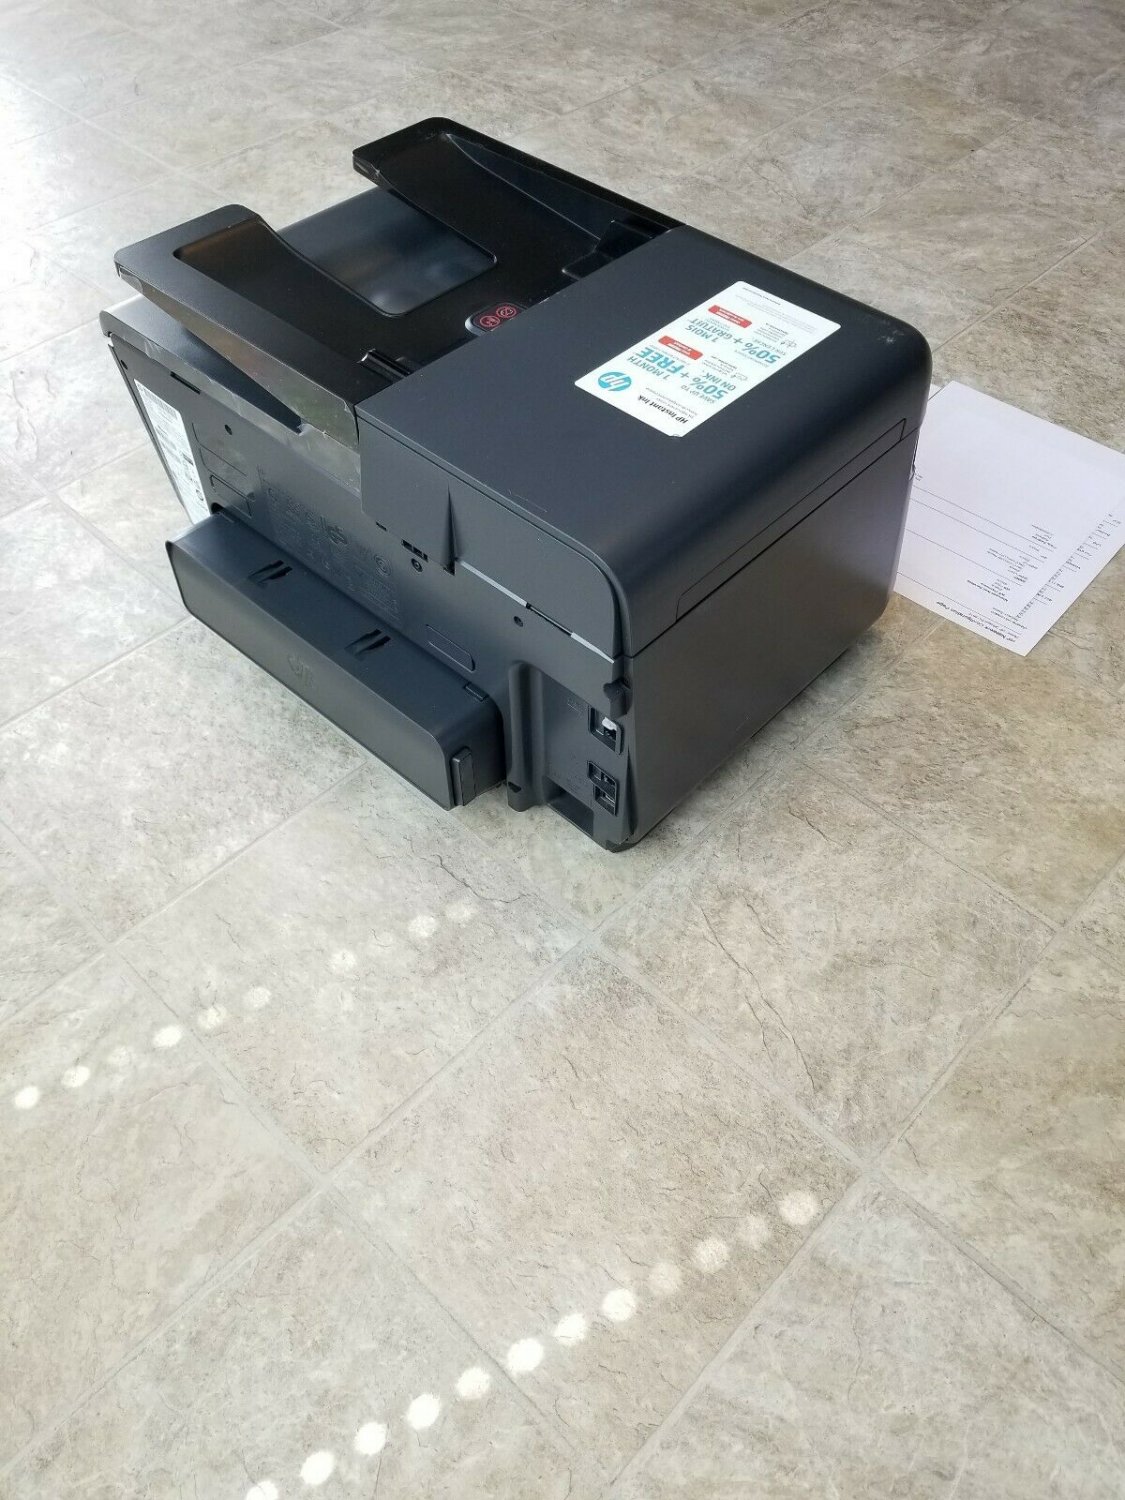 HP Officejet Pro 8610 All-In-One Inkjet Printer